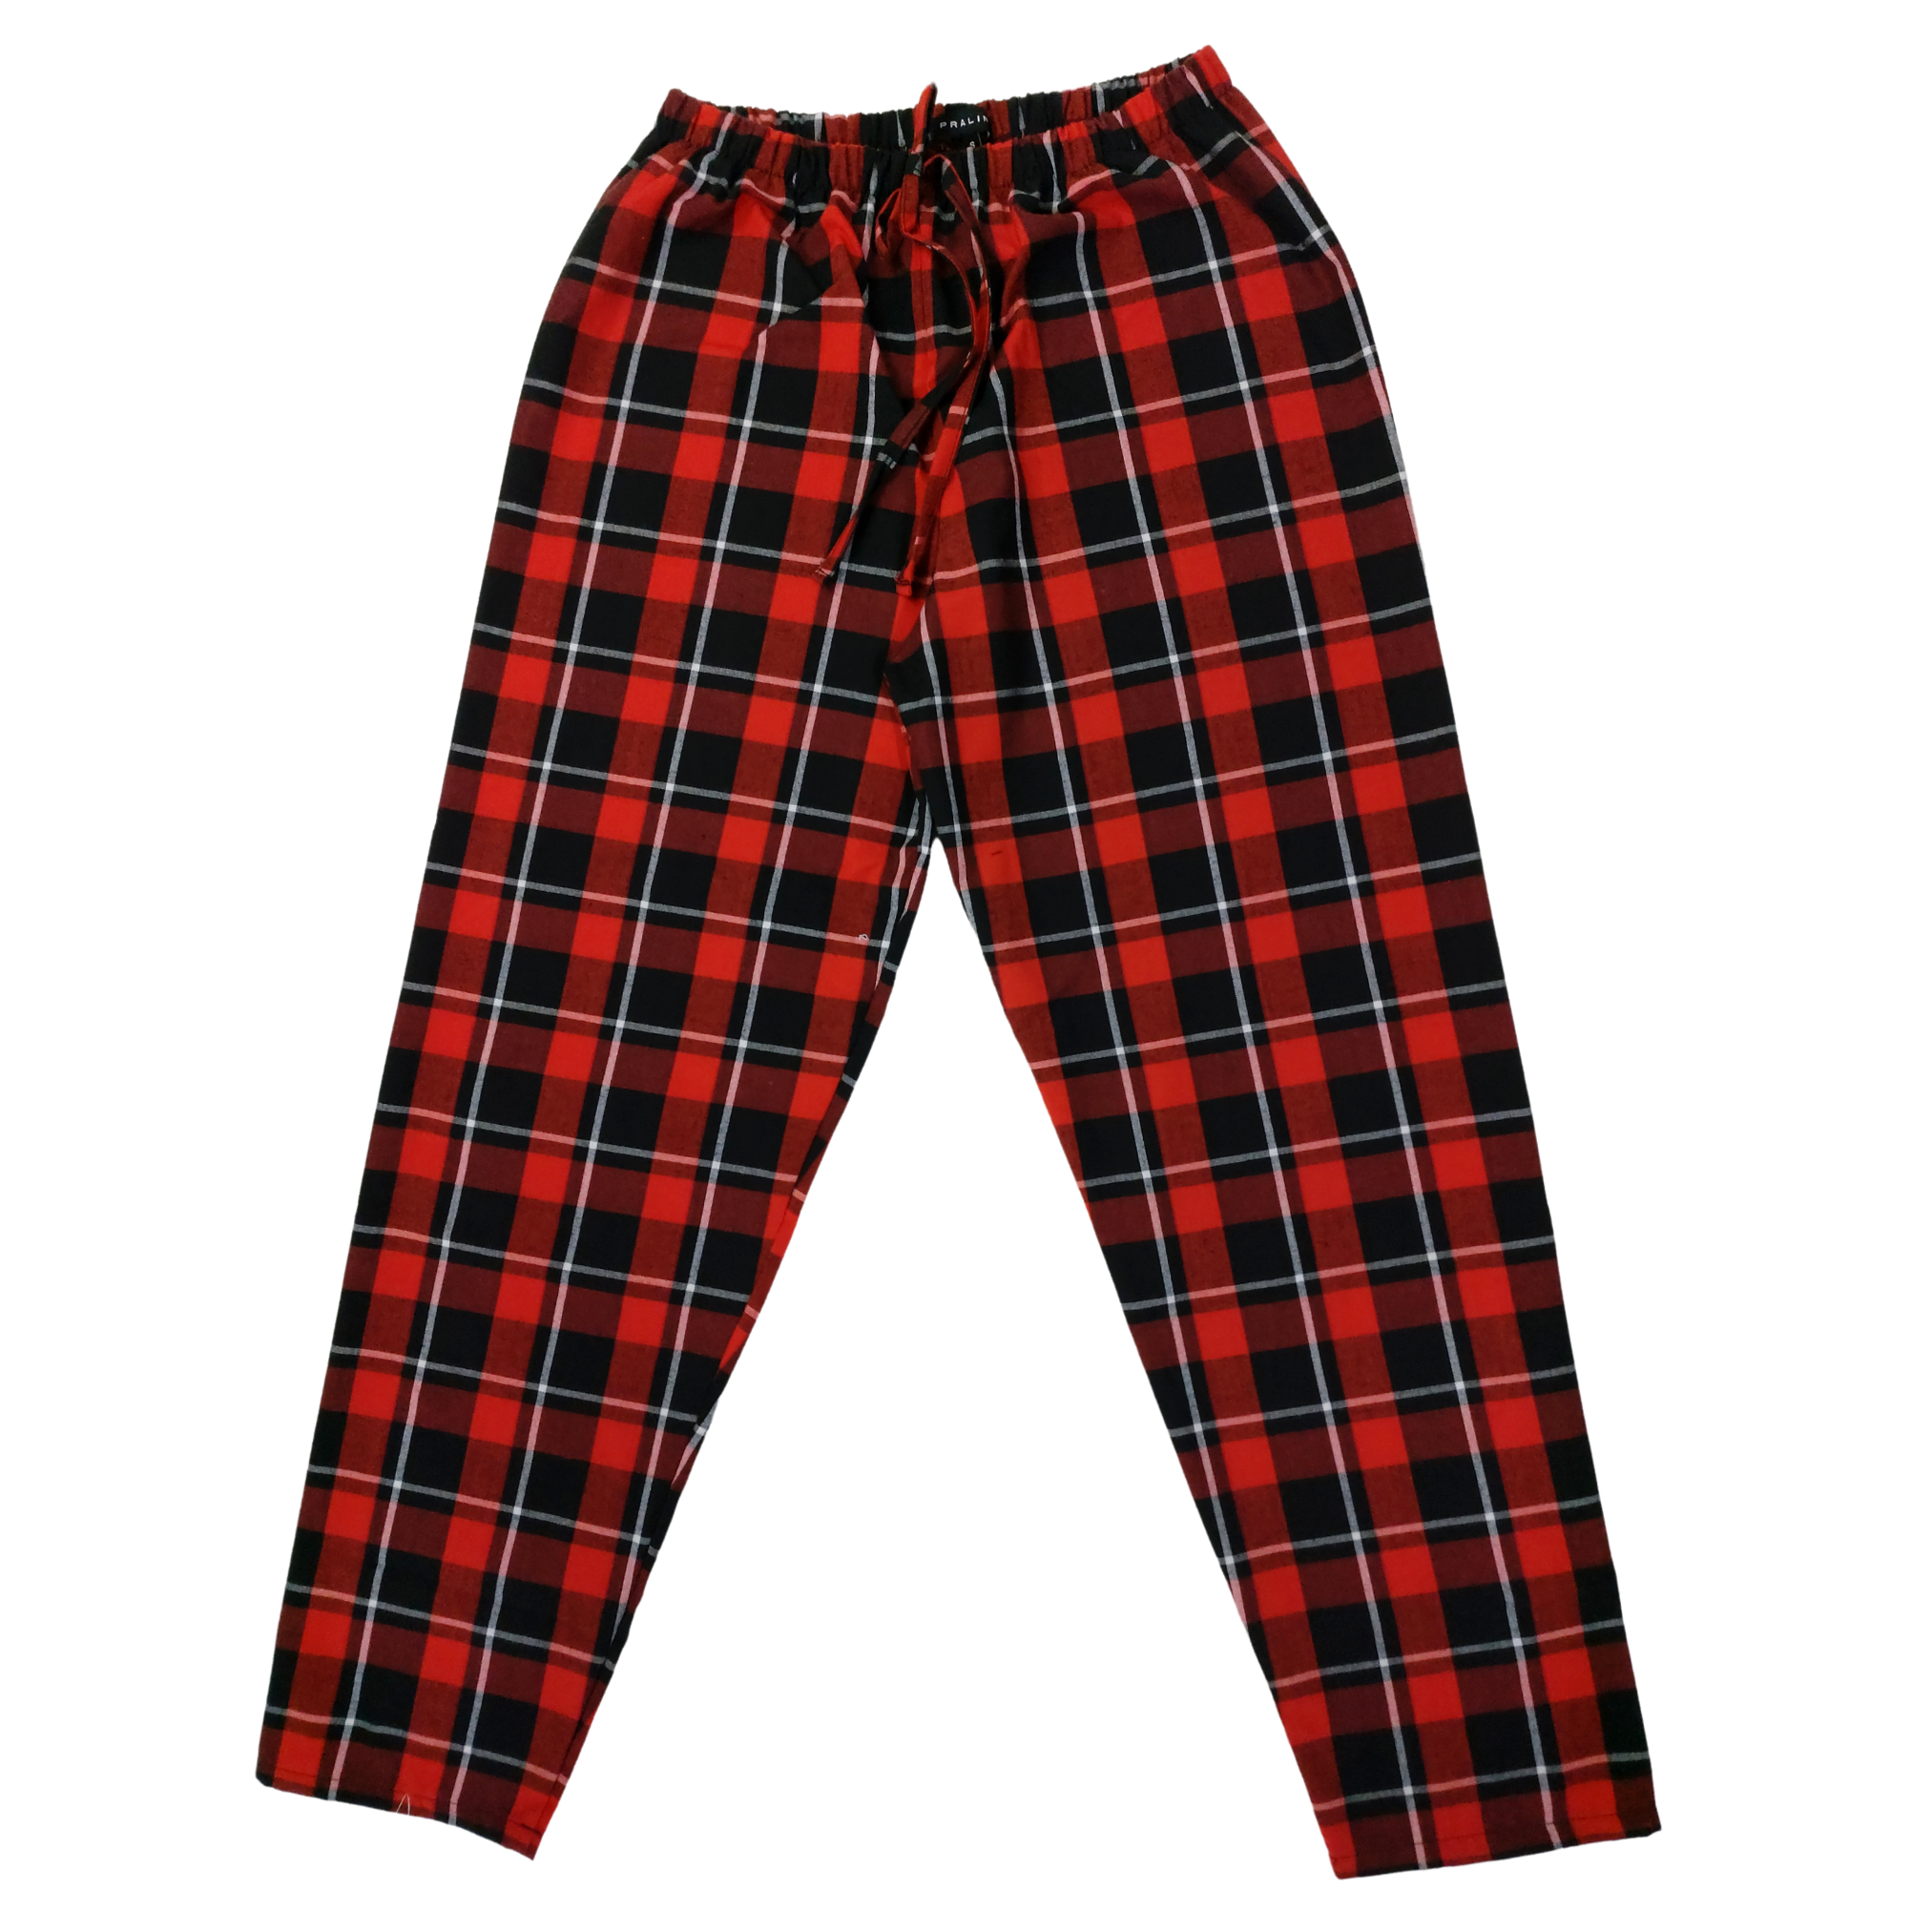 Pantalón Pijama Rojo/Negro Unisex Adulto 00012